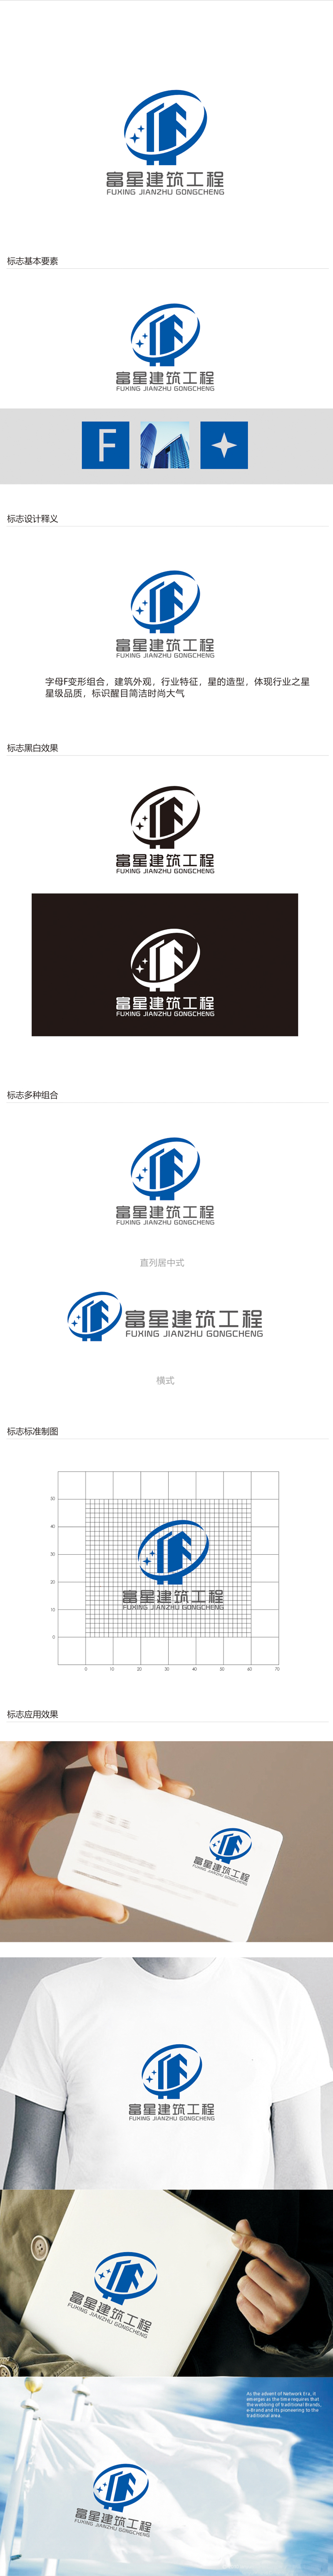 赵鹏的天津富星建筑工程有限公司logo设计